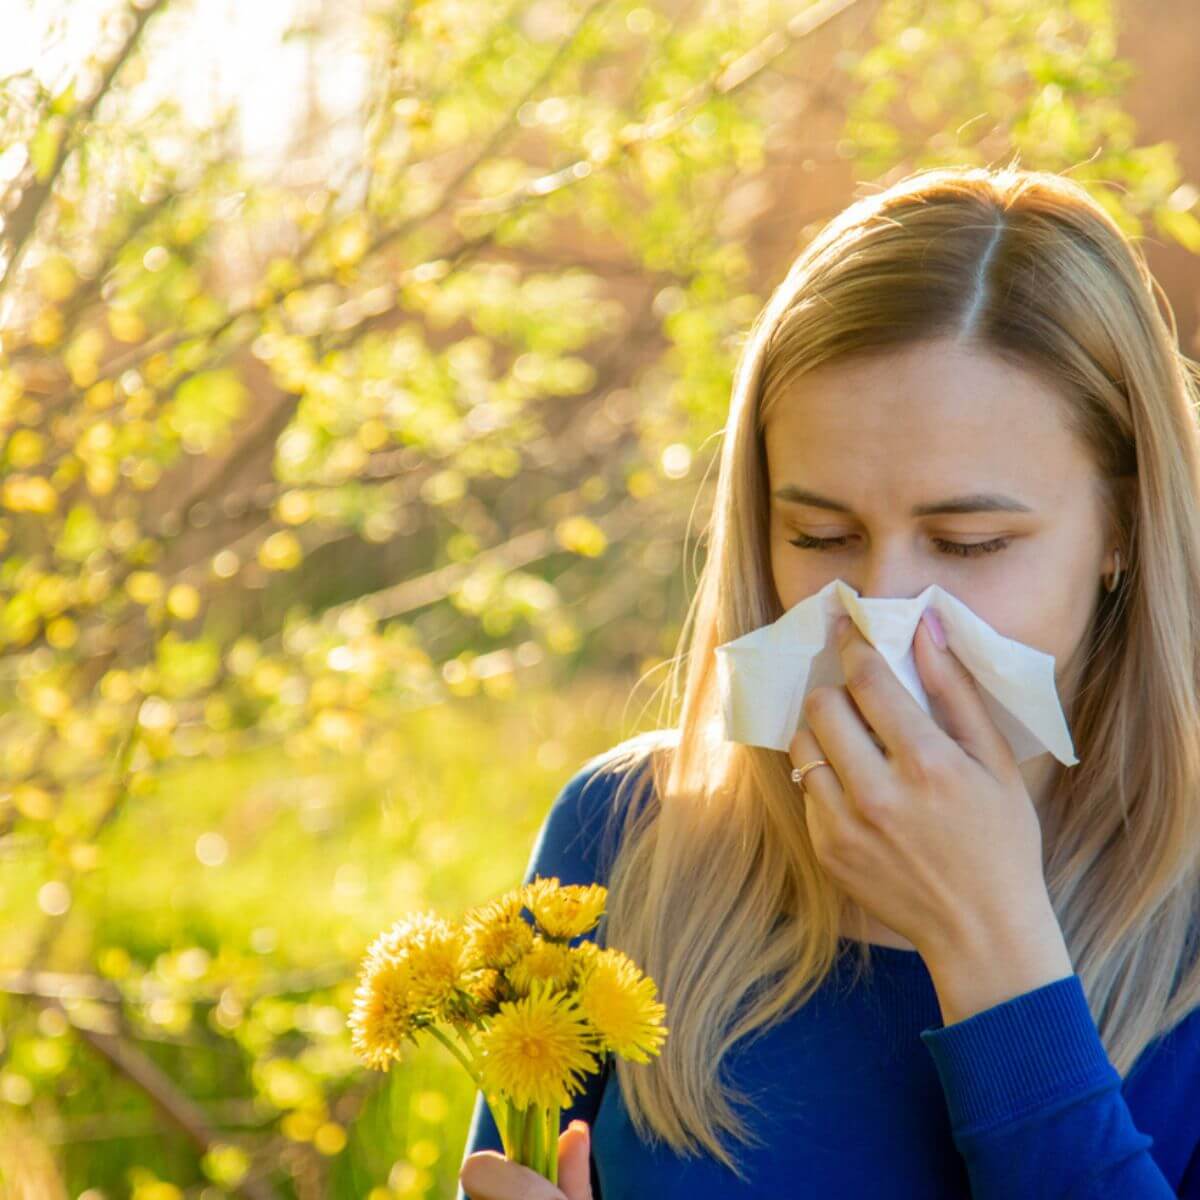 Seasonal allergies and leaky gut health